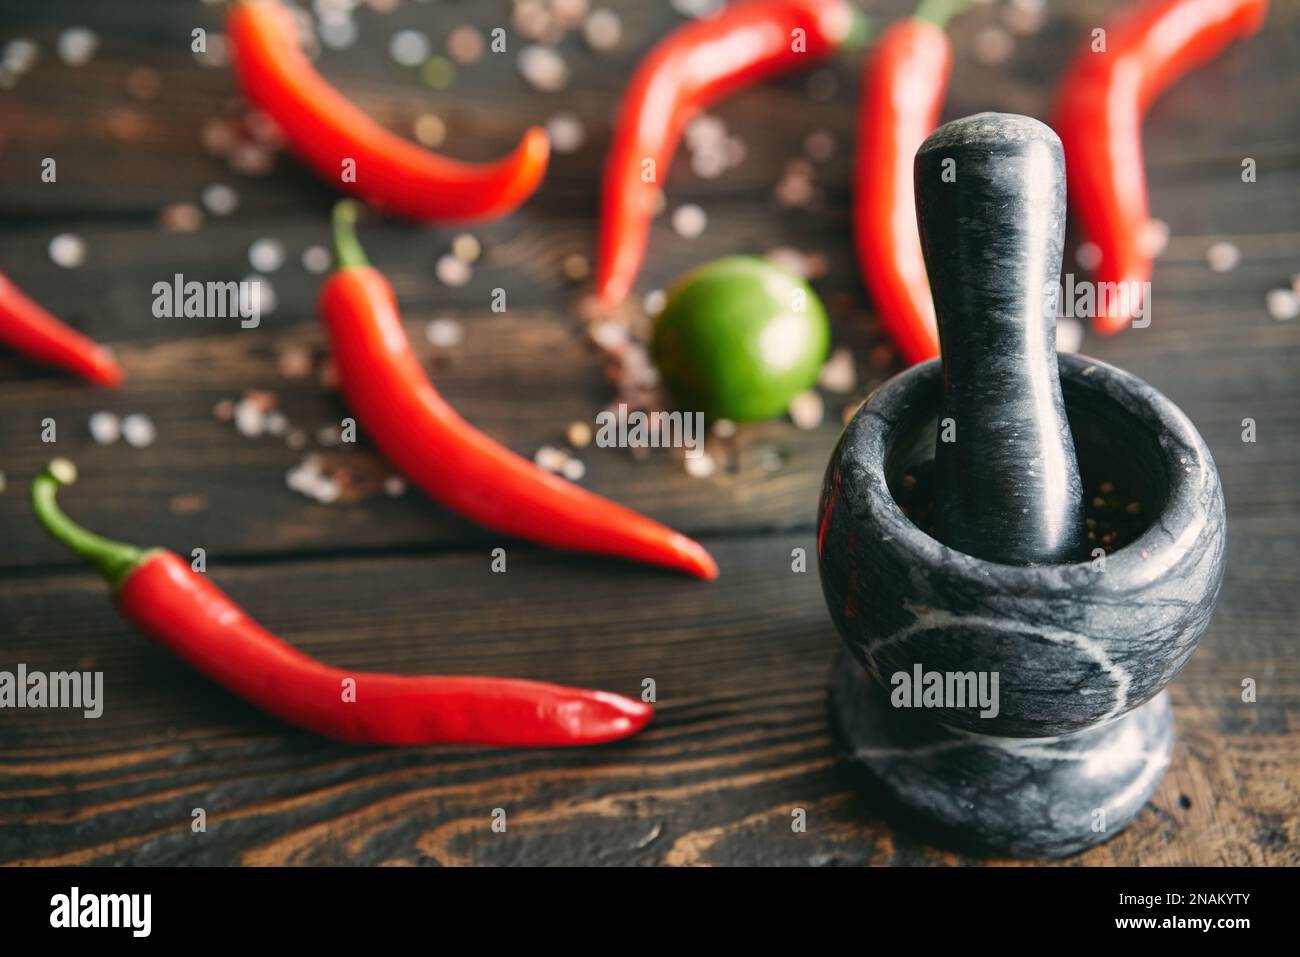 Mortaio in marmo nero con pestello pieno di pepe misto con peperoncino rosso caldo sullo sfondo. Spezie per la cucina, concetto di stile degli alimenti Foto Stock